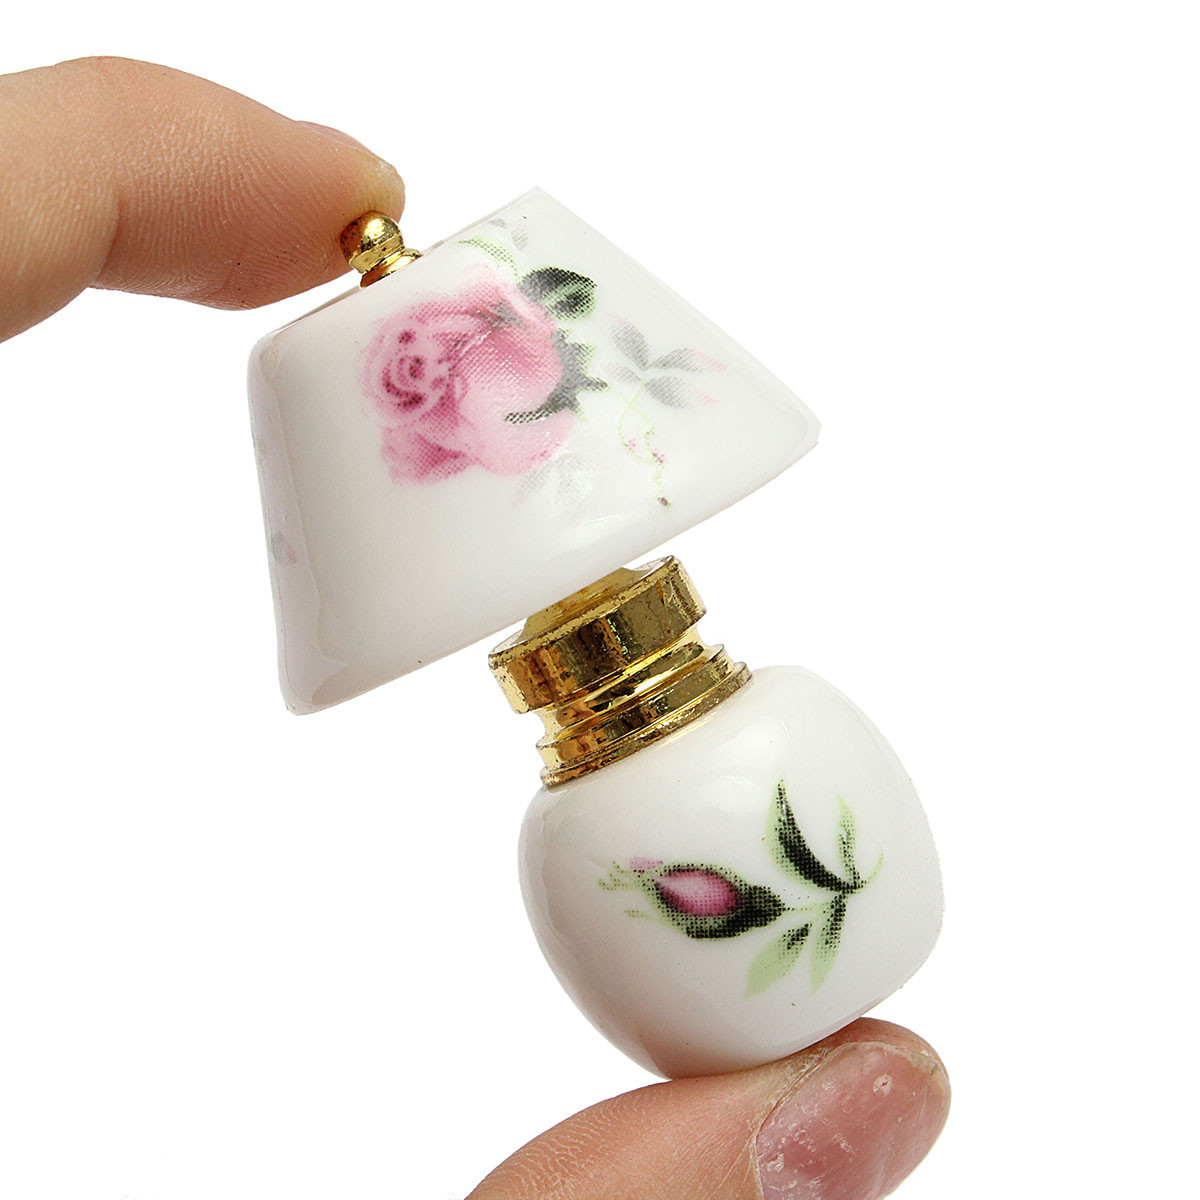 

Vintage Porcelain Flower Lamp 1:12 Dollhouse Table Decor Miniature Ornament Gift